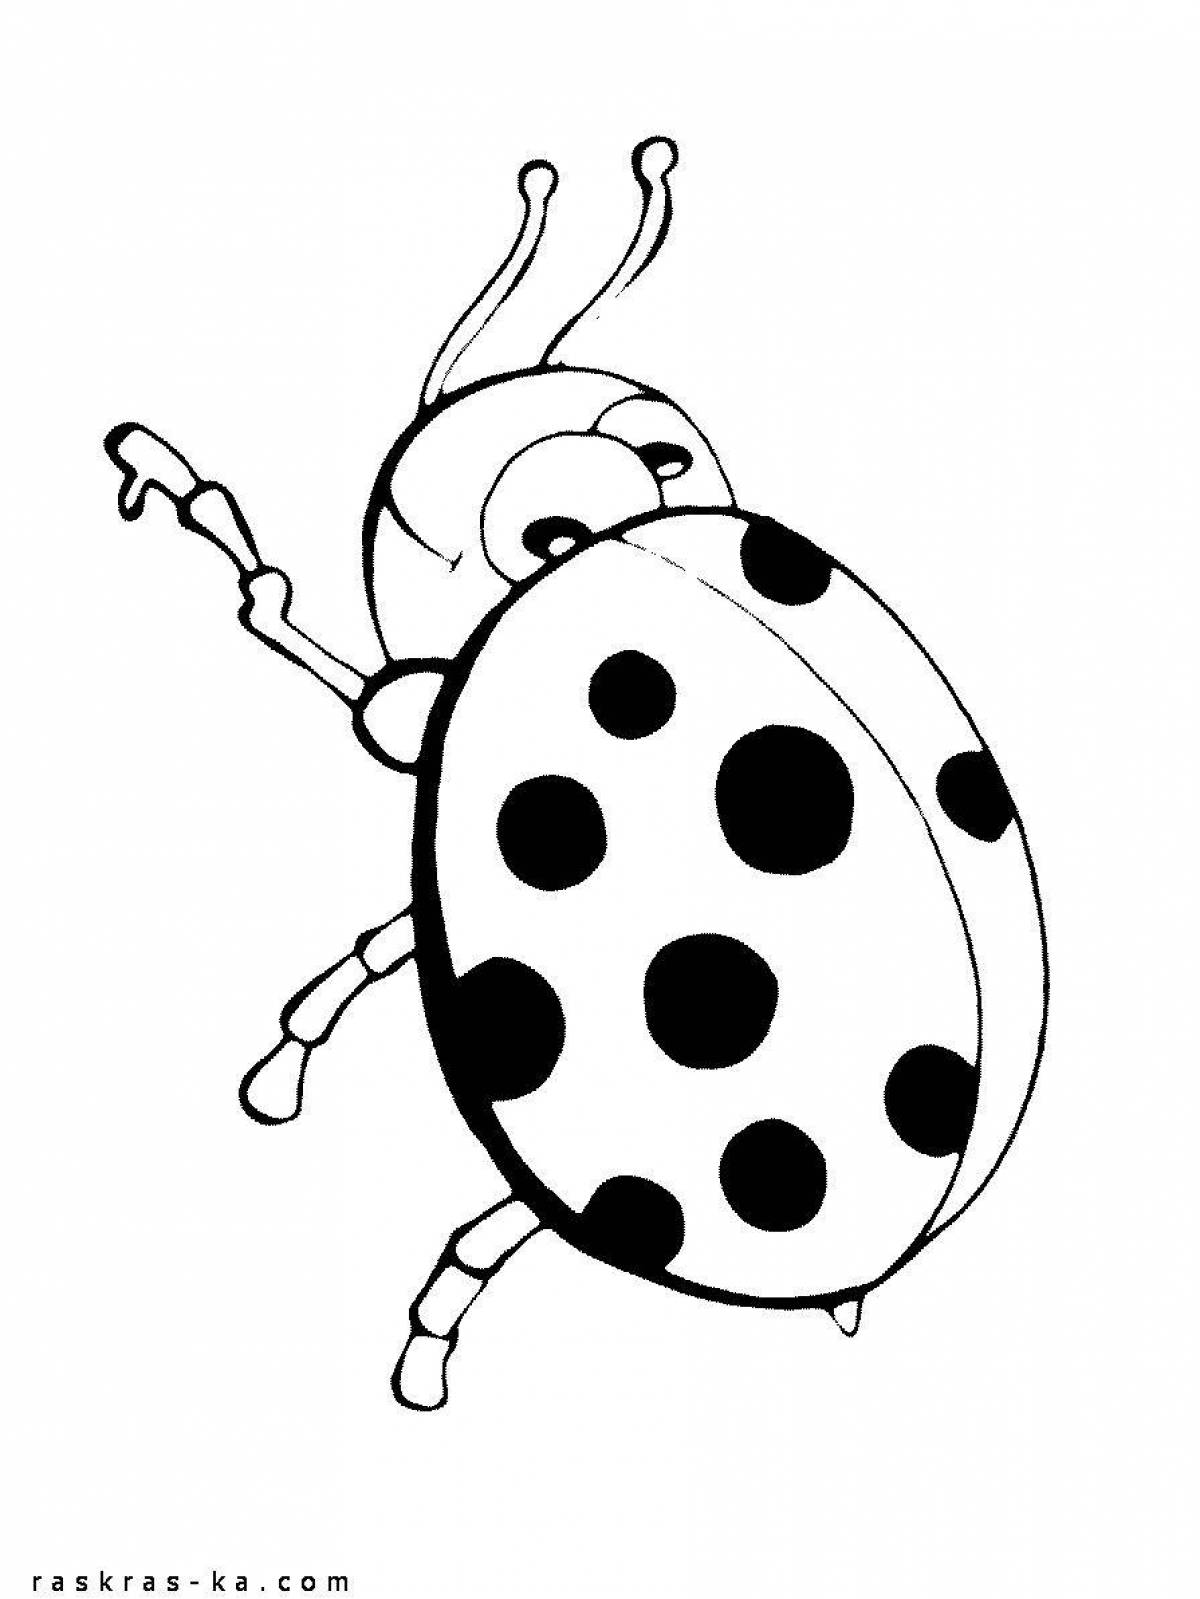 Ladybug game #1